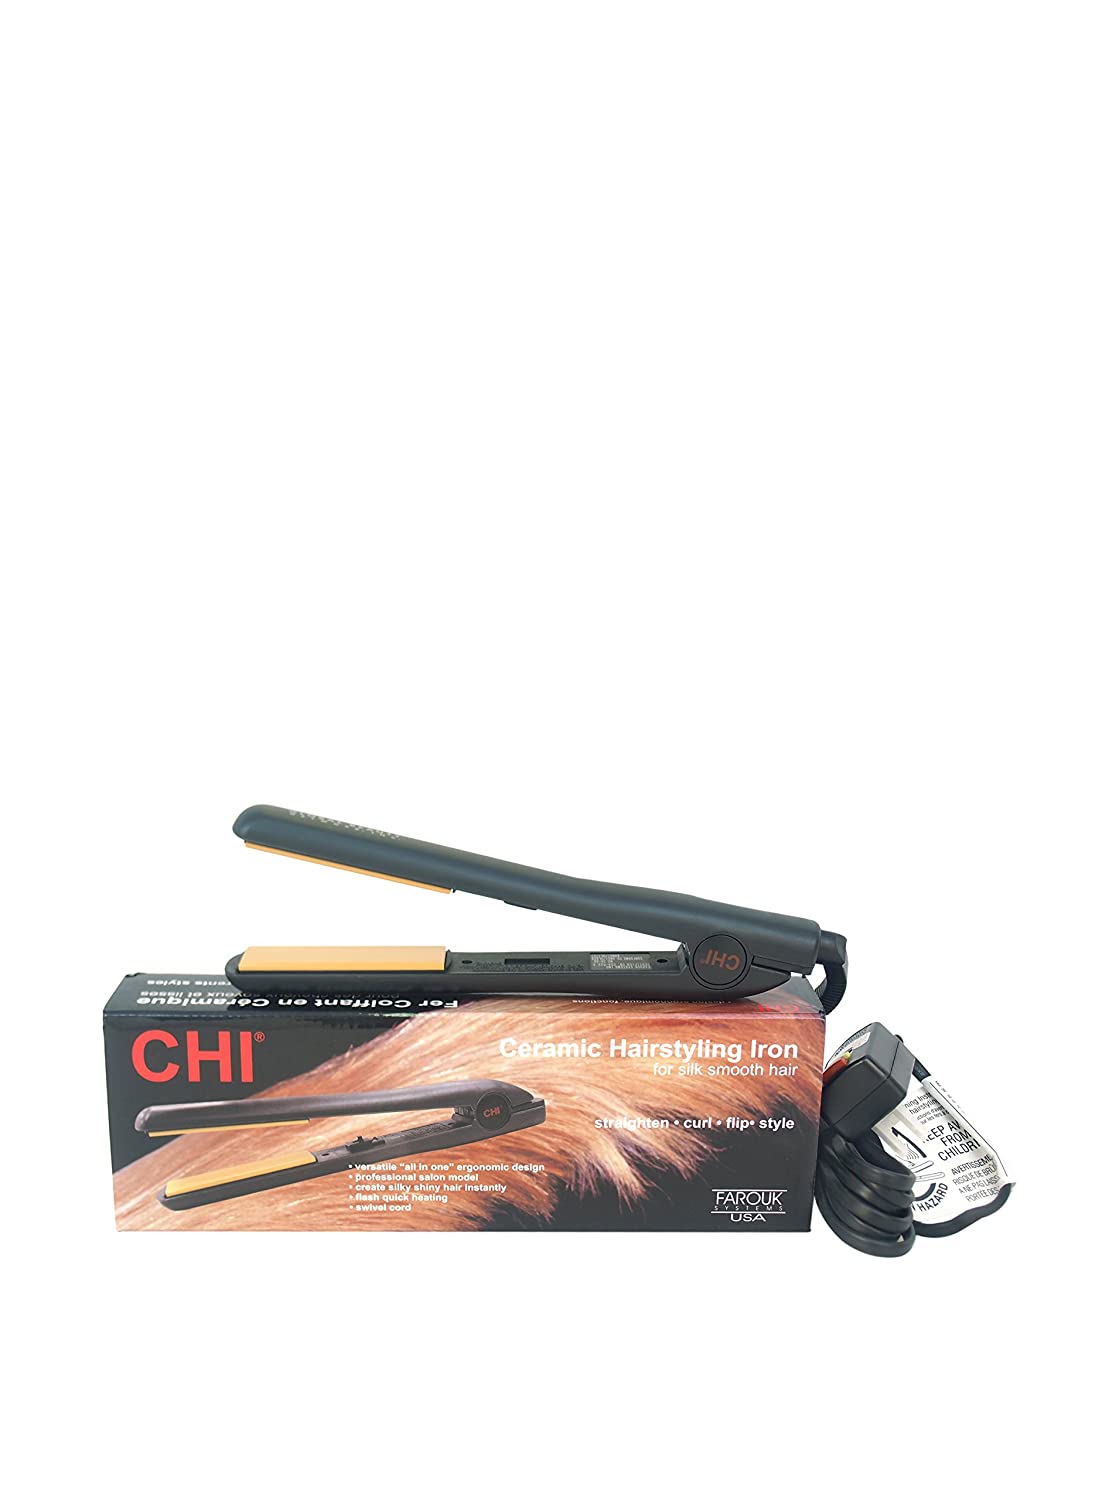 CHI Original Hair Straightening Ceramic Hairstyling Flat Iron